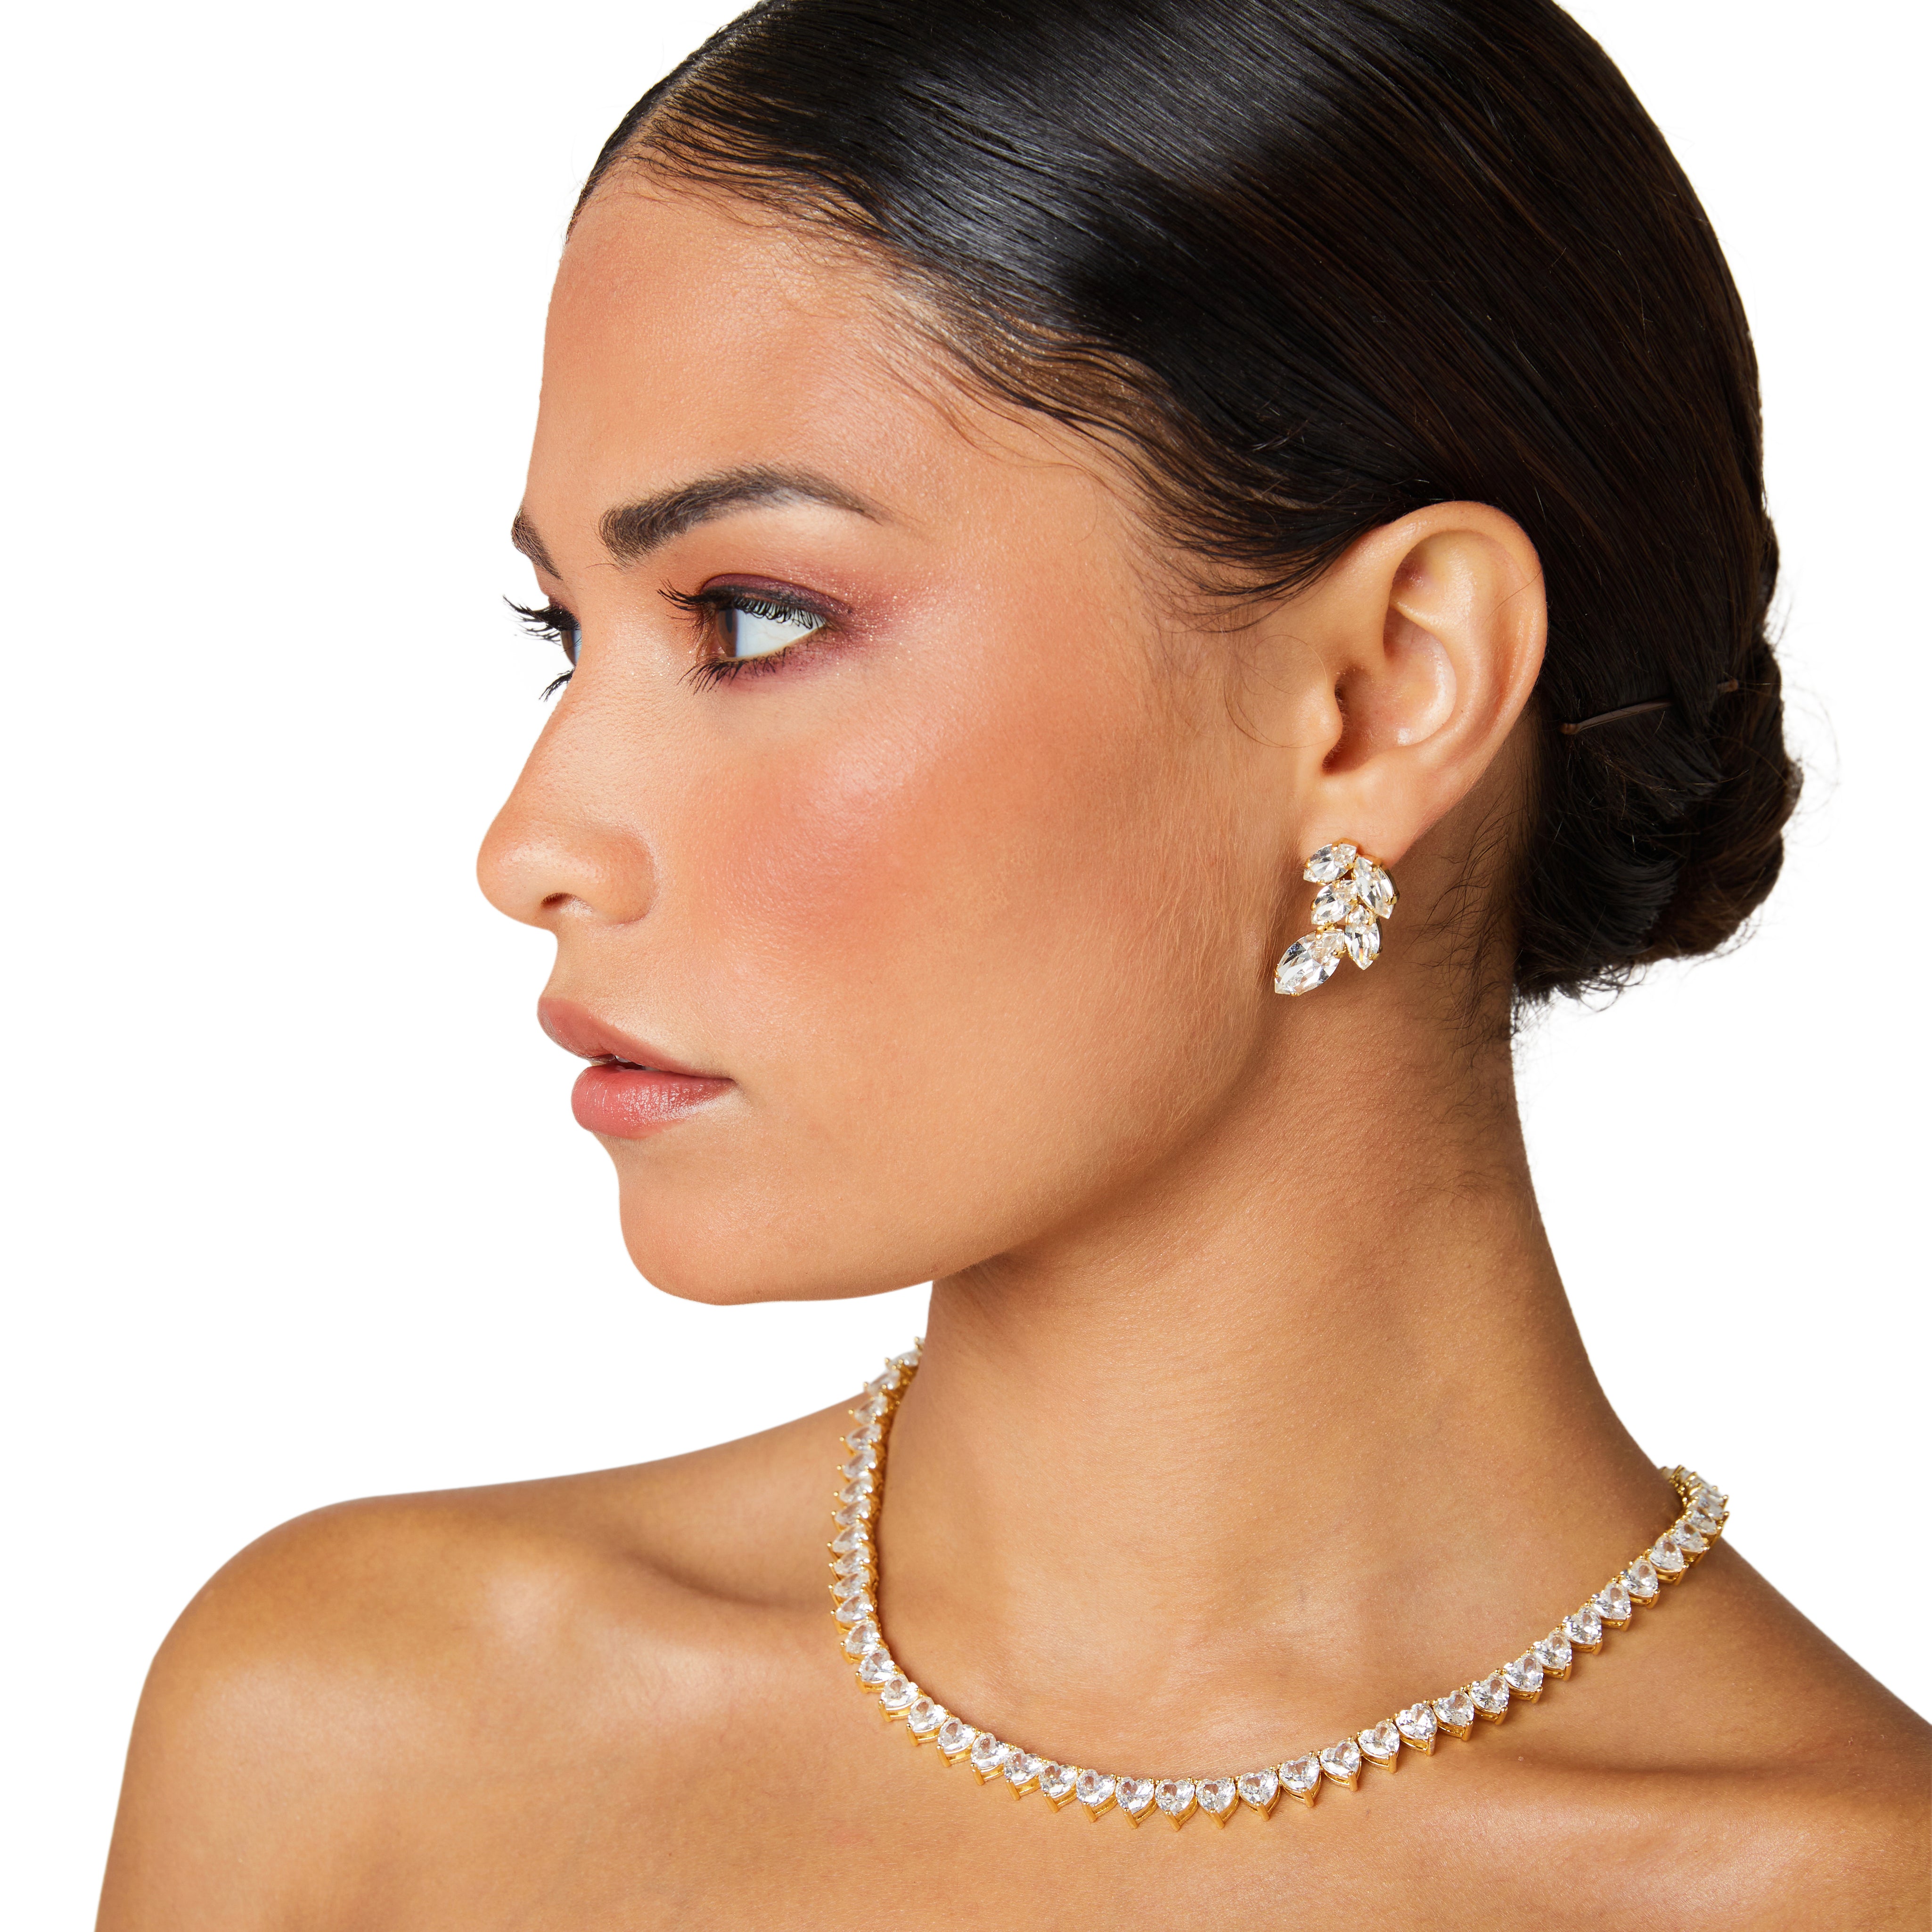 Cluster earrings, swarovski earrings, crystal earrings, designer earrings, gold earrings, statement earrings